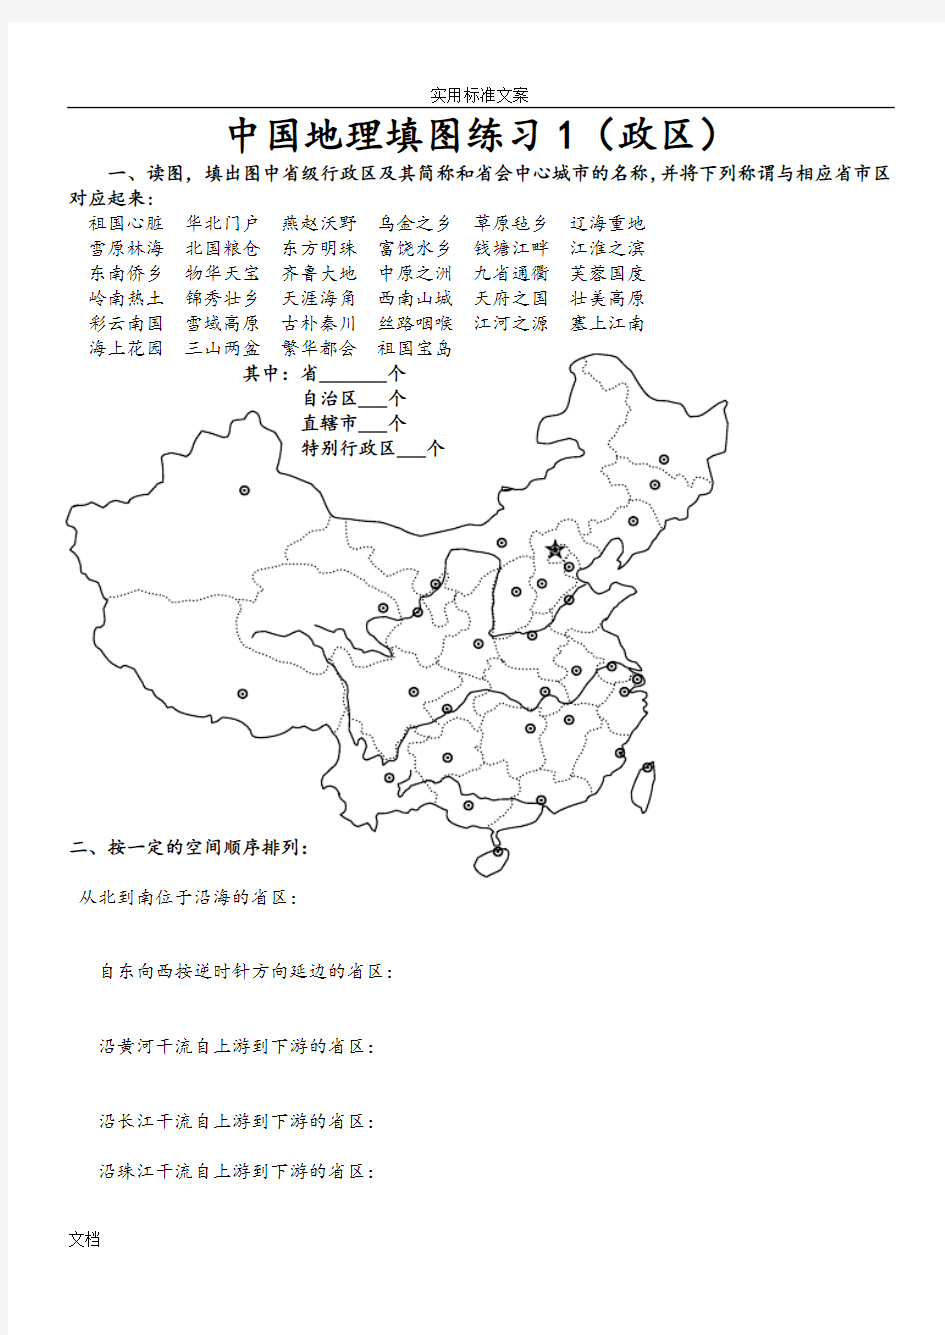 中国地理填图练习汇总情况